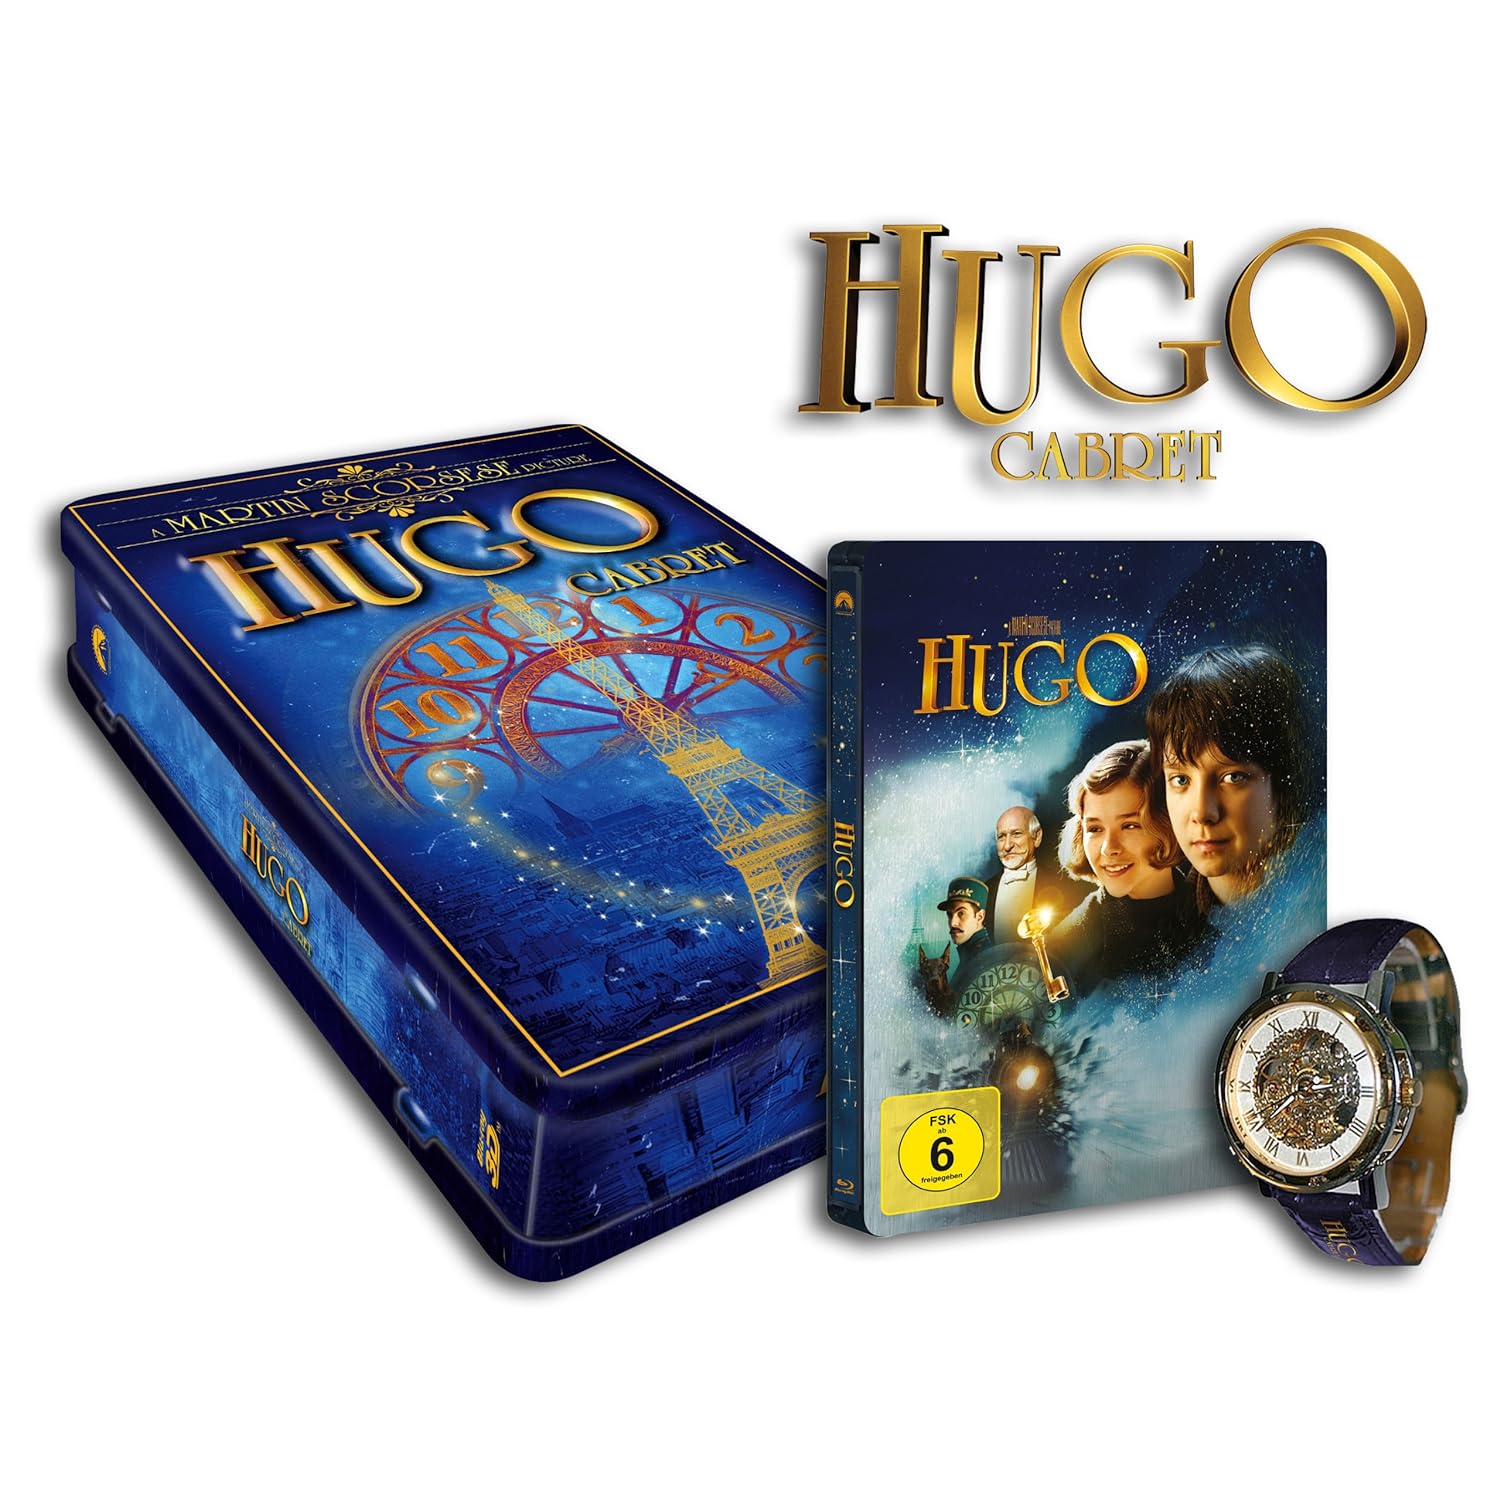 Hugo 3. Hugo 3d. Hugo Cabret. The Art of Flight 3d Blu-ray.